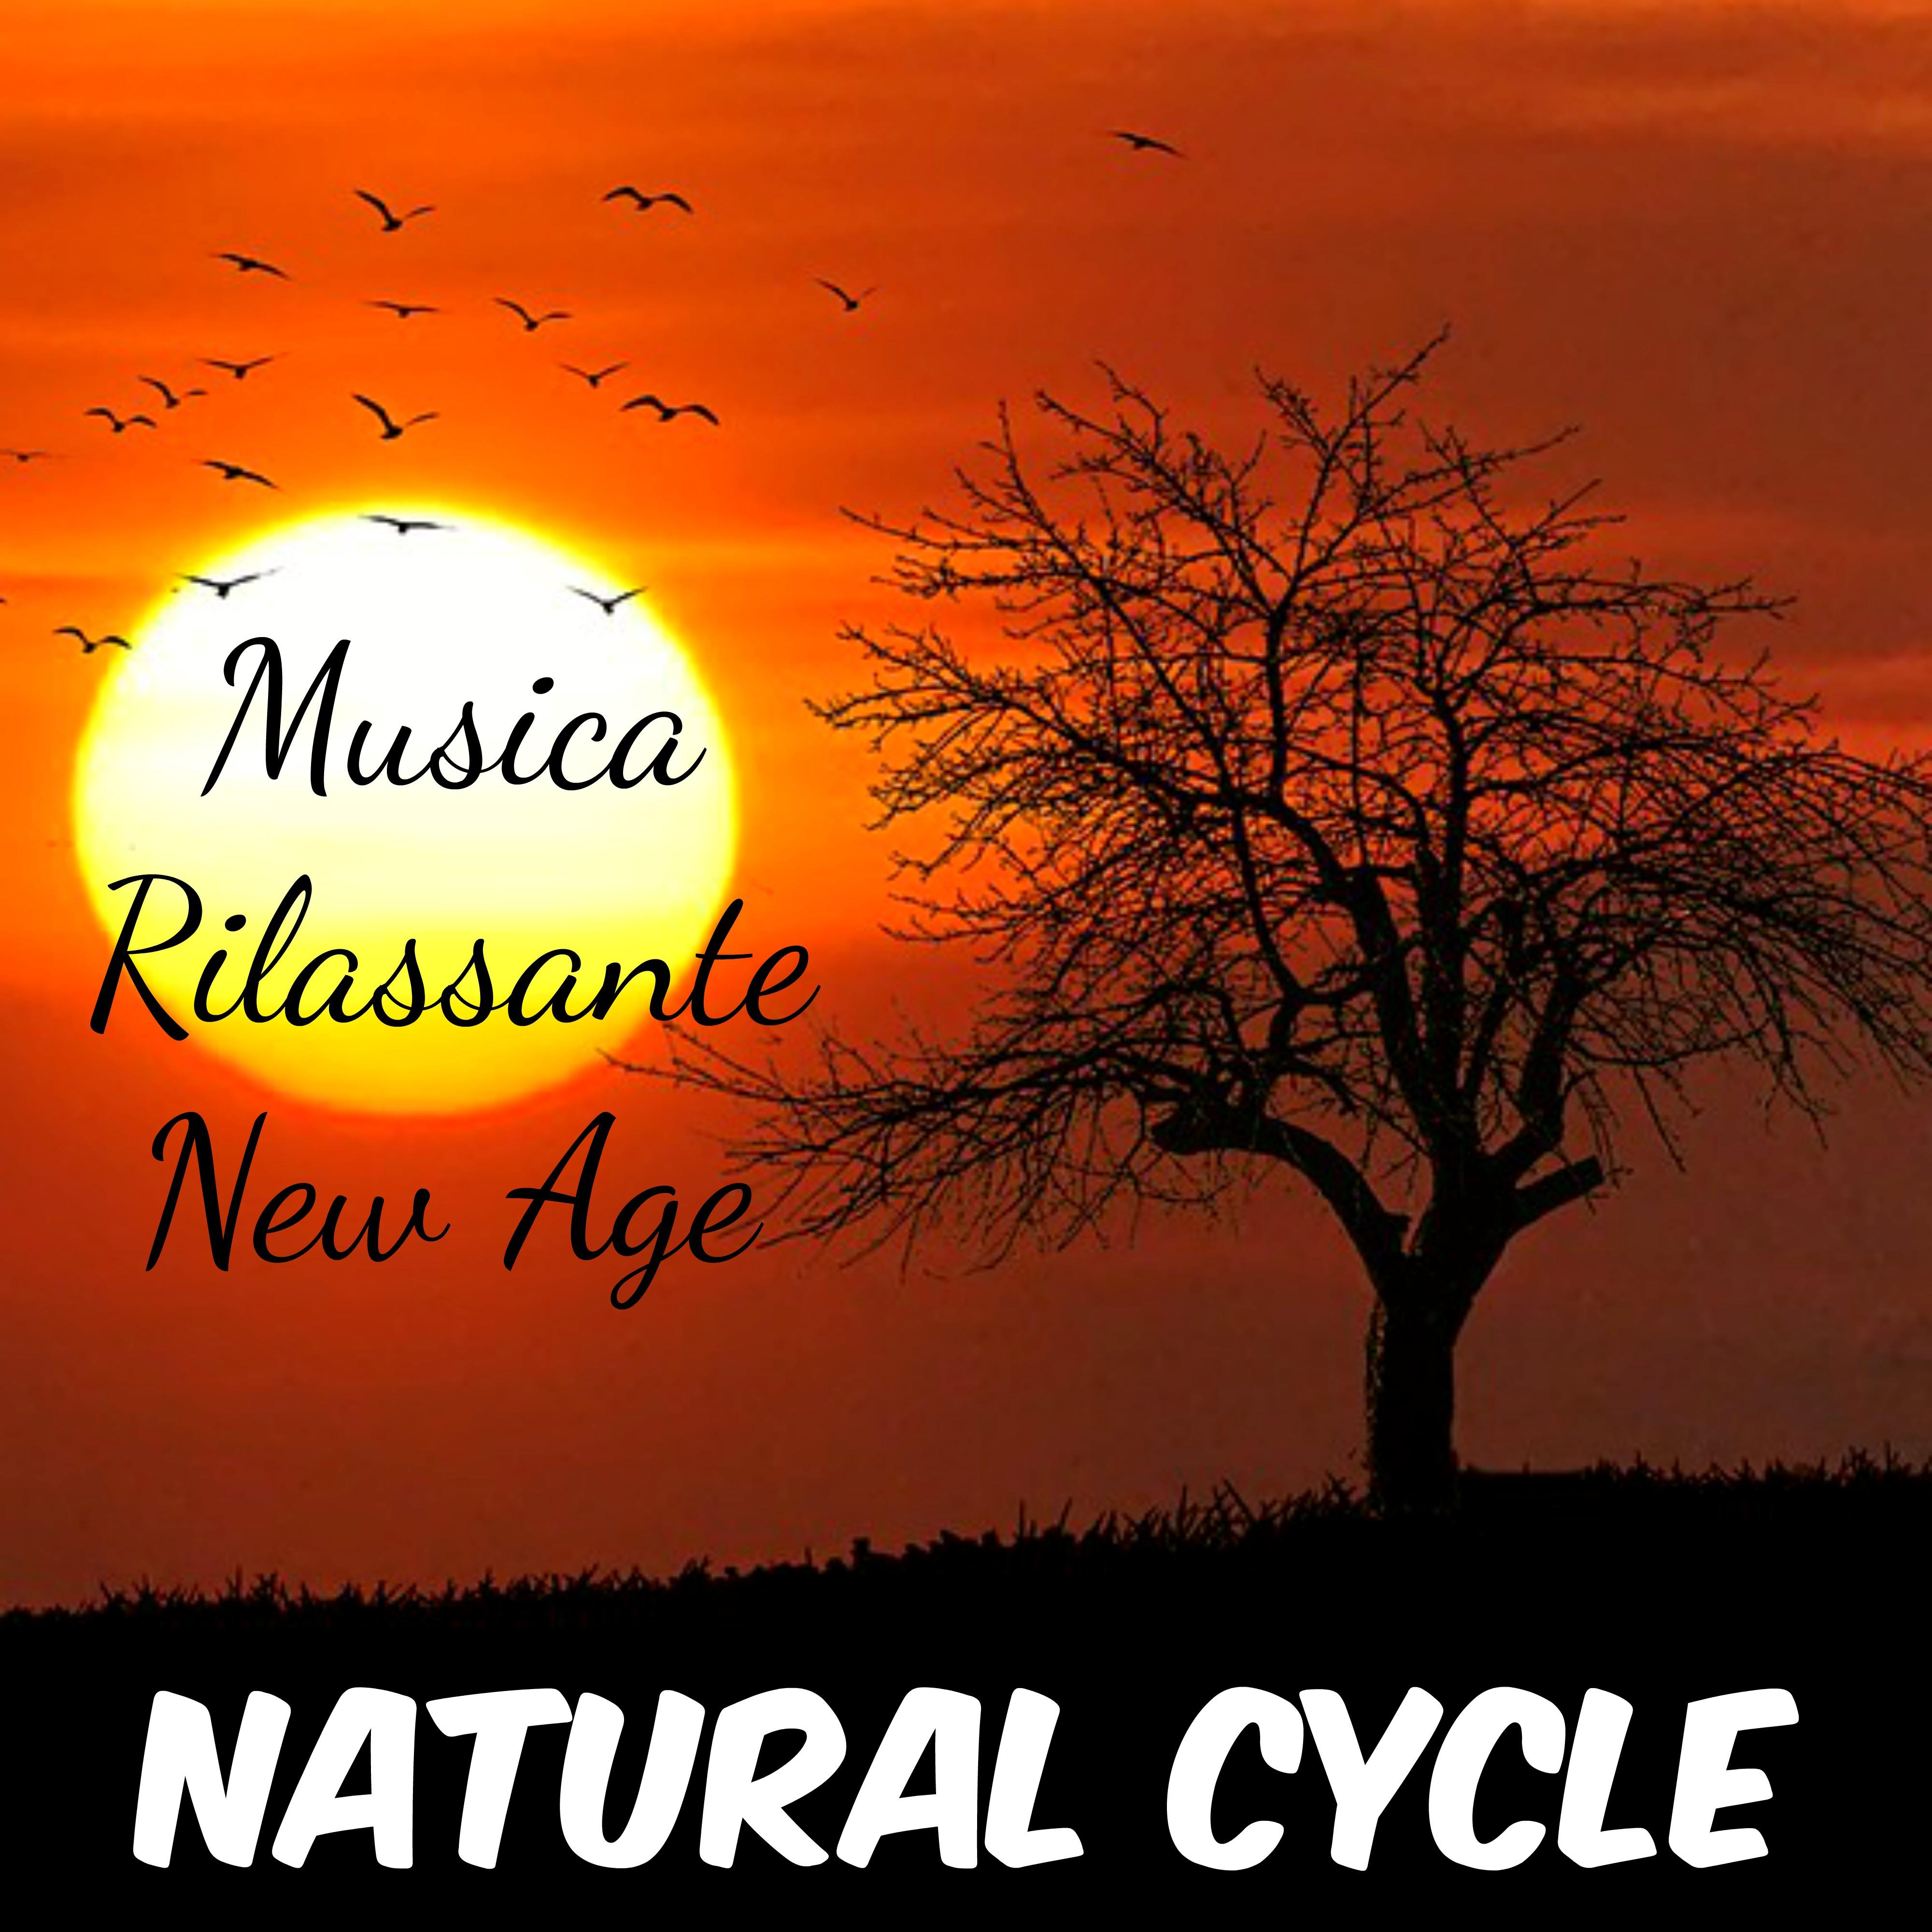 Natural Cycle - Musica Rilassante New Age della Natura per Rilassamento Profondo Allenare la Mente Meditazione Yoga con Suoni Valmanti Strumentali Binaurali